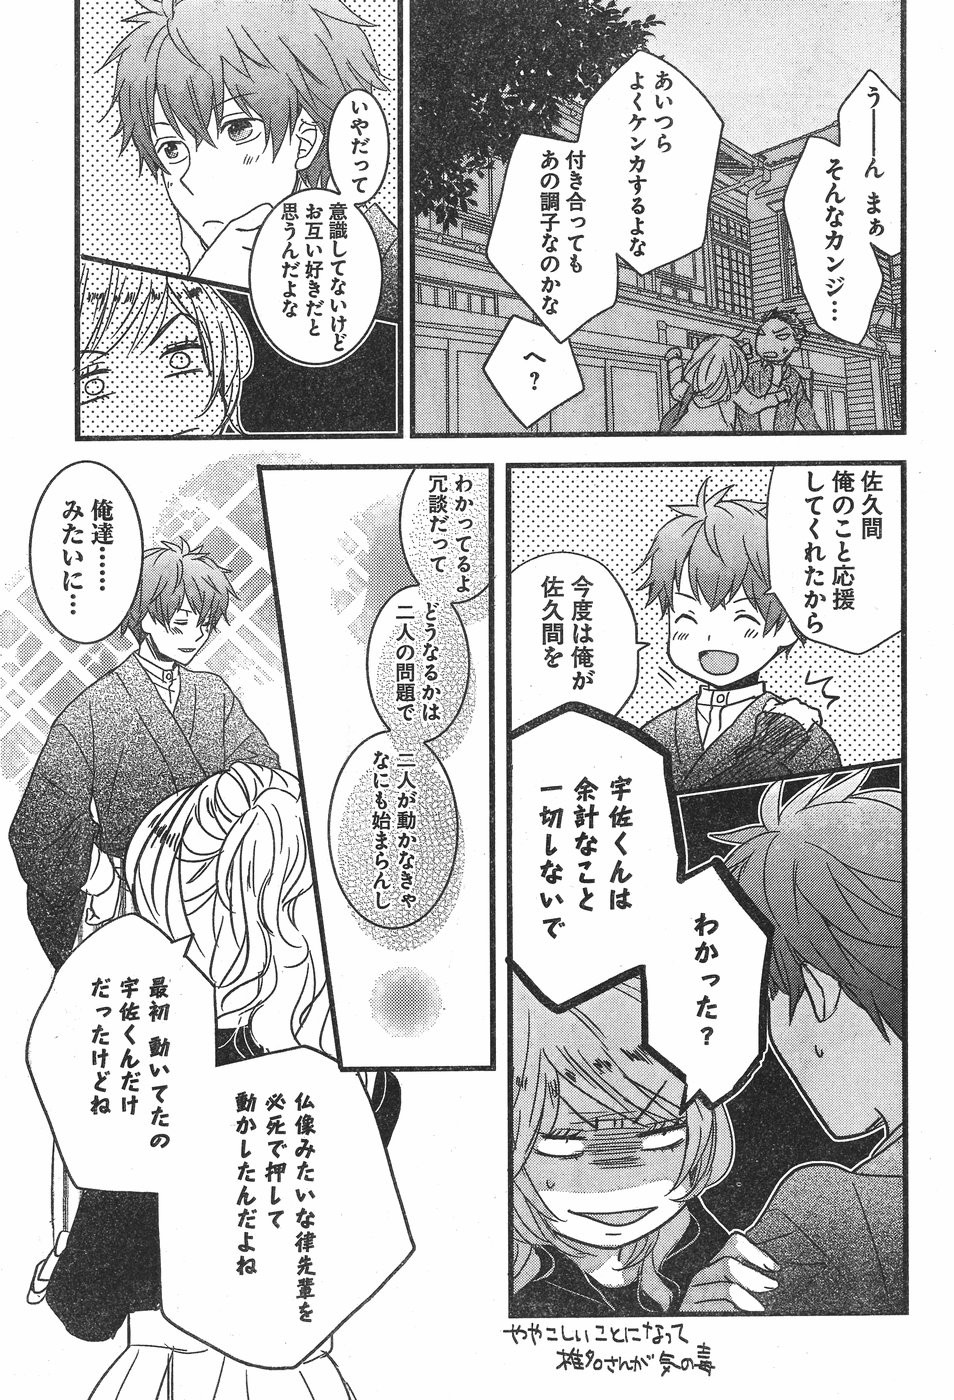 Bokura wa Minna Kawaisou - Chapter 84 - Page 15